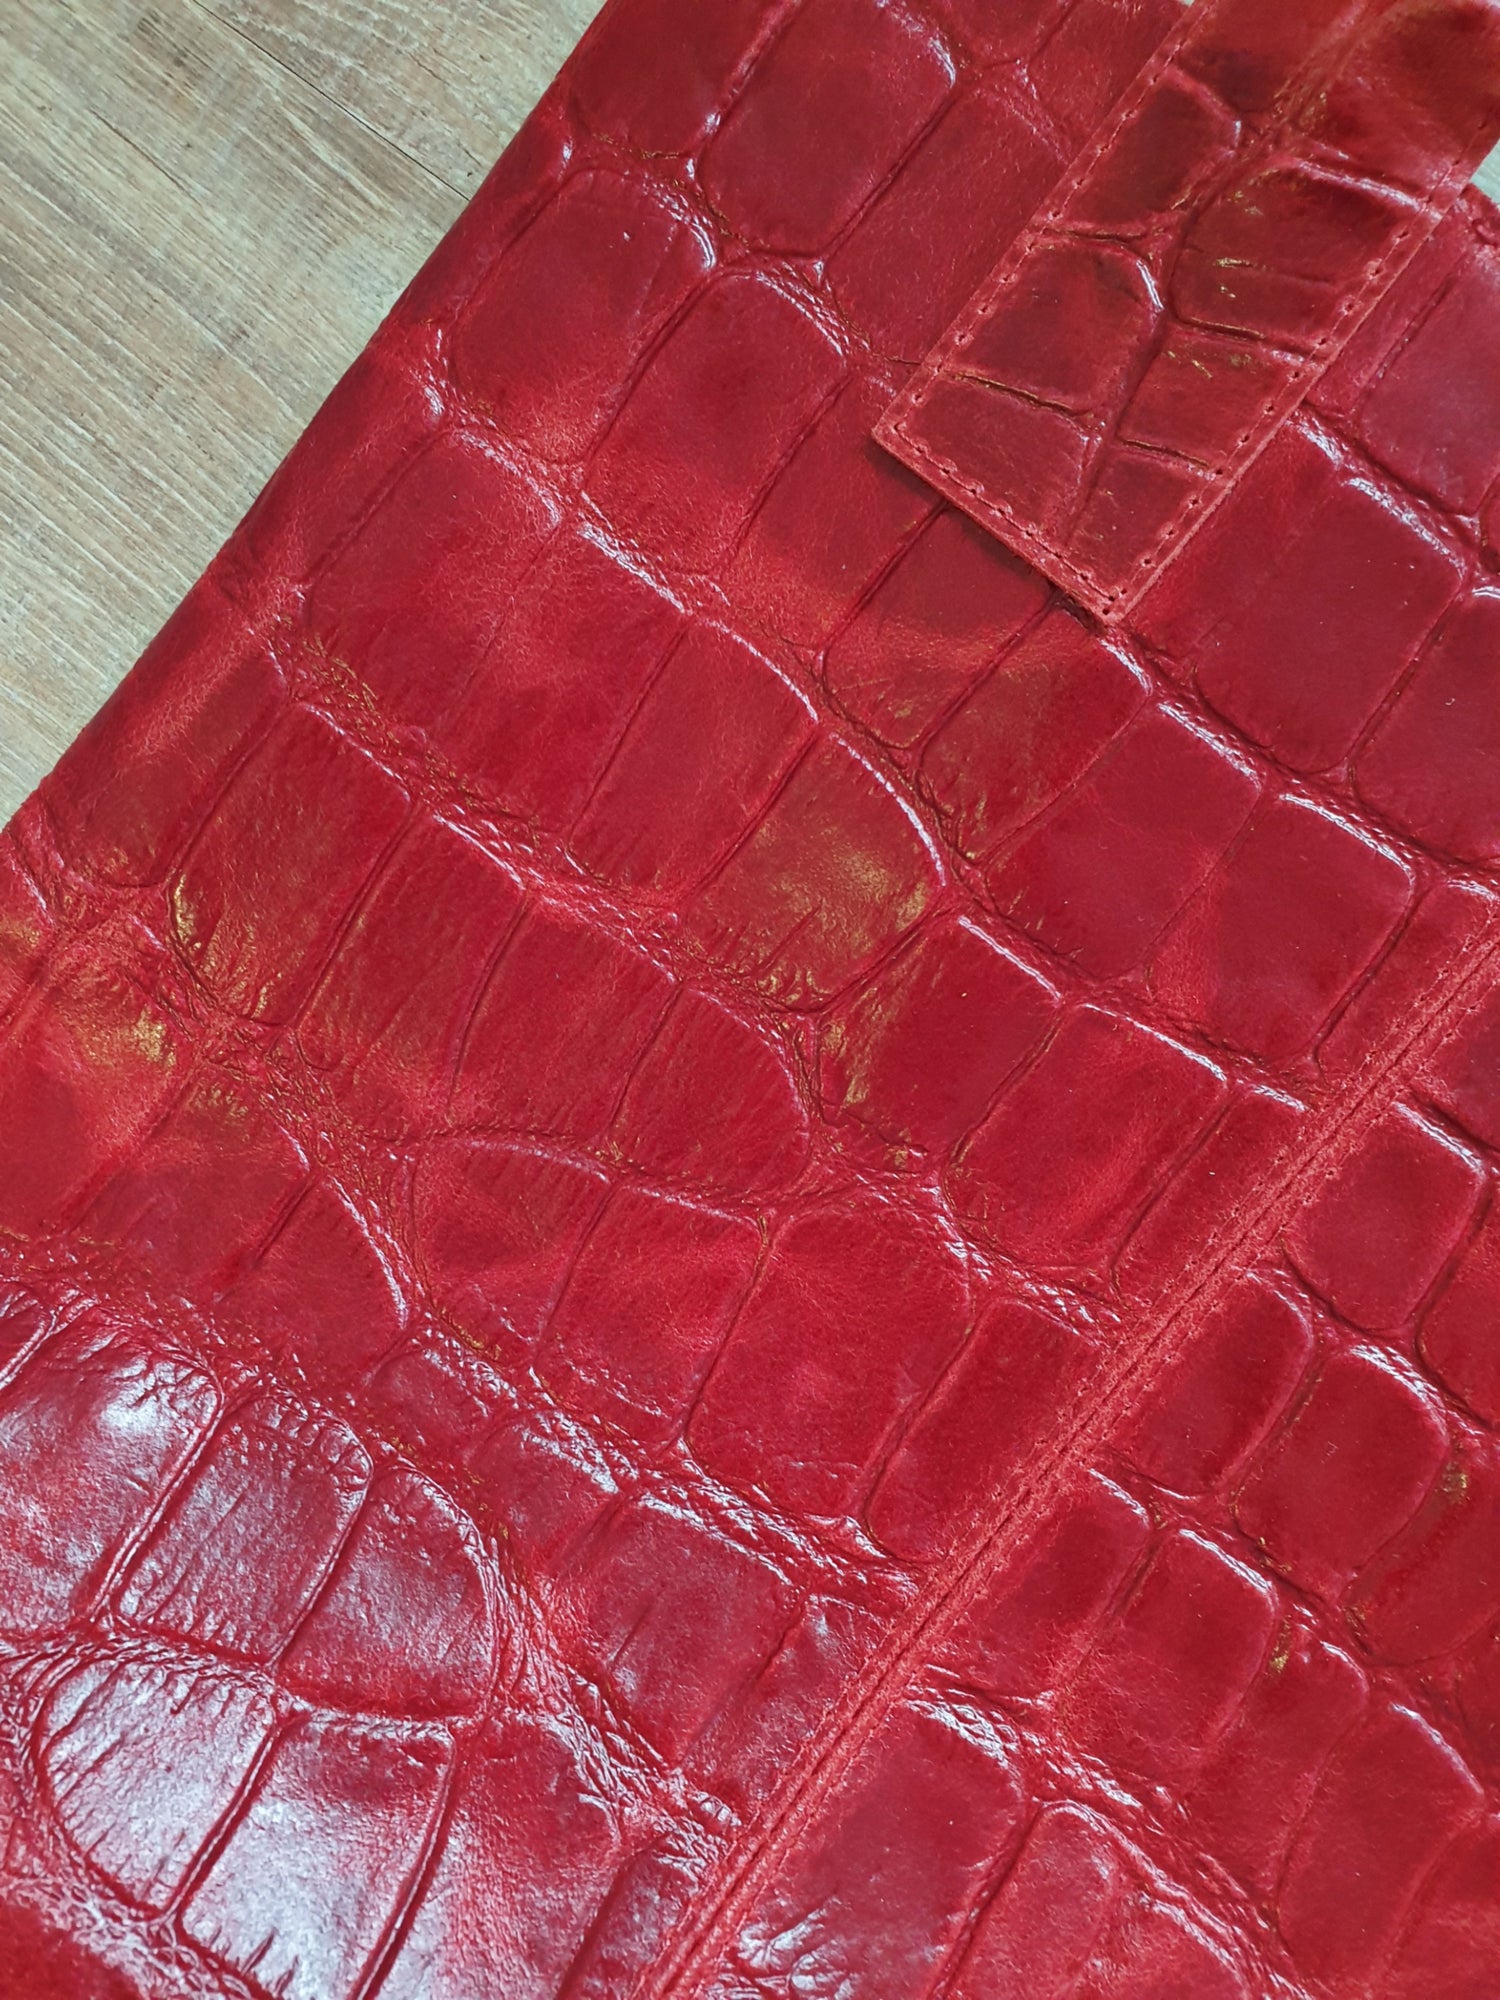 Tasche Shopper in Rot aus Leder mit Krokopraegung gross Detailansicht